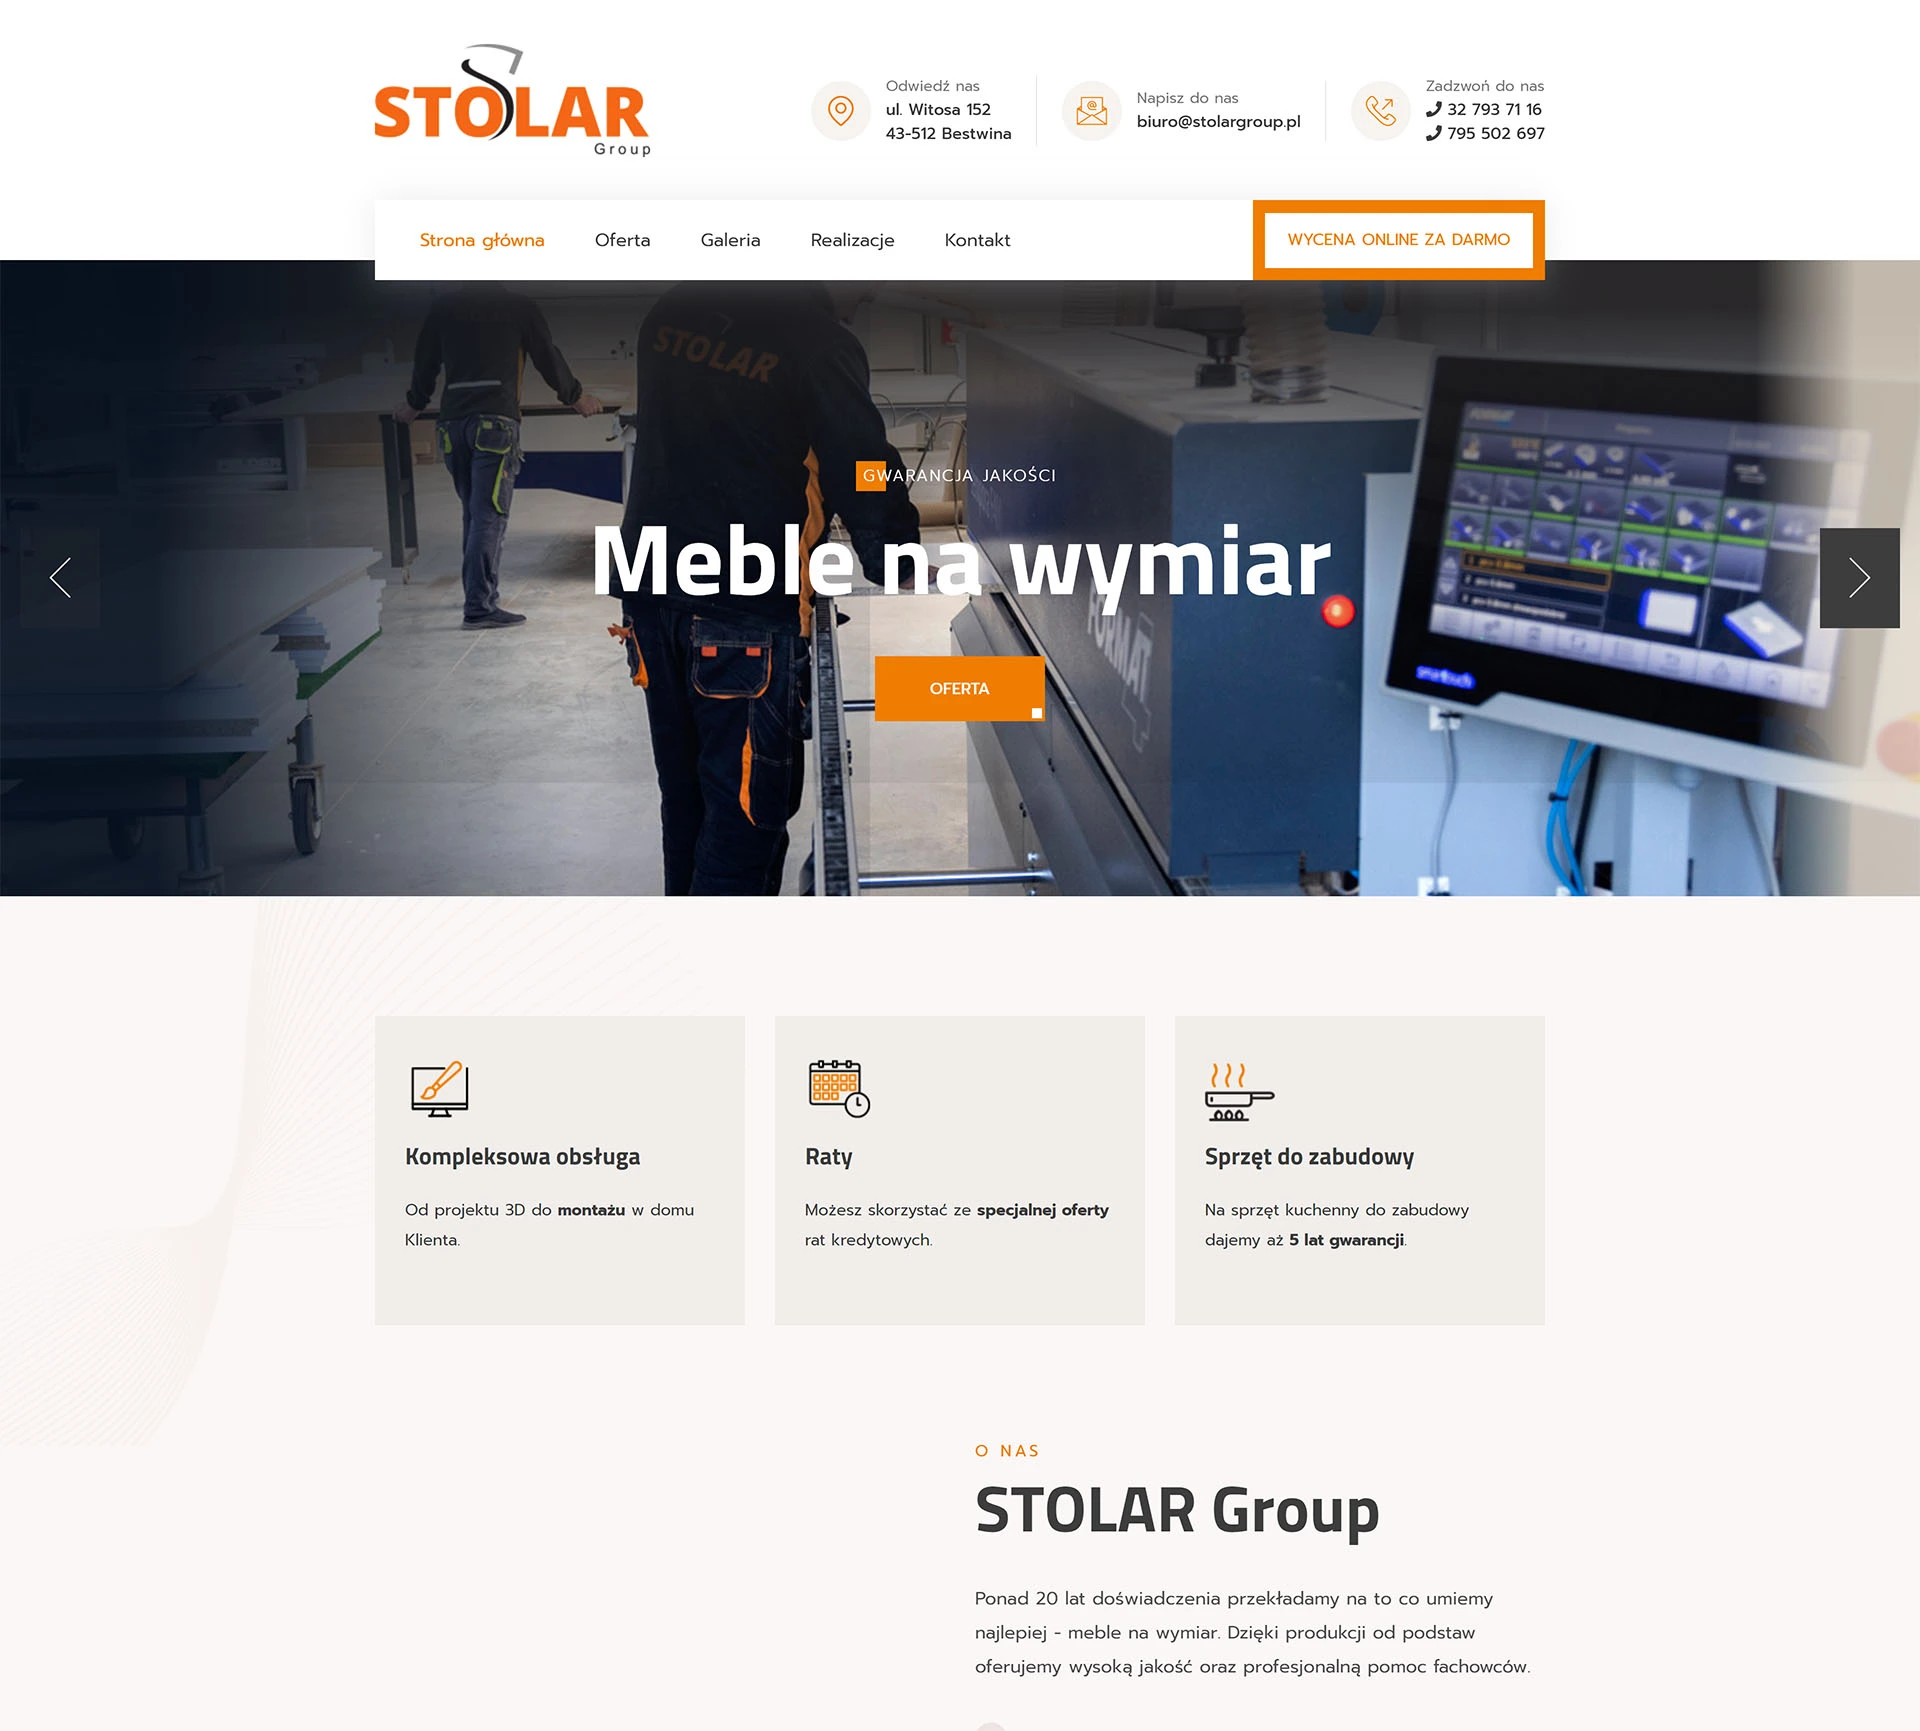 Stolar Group